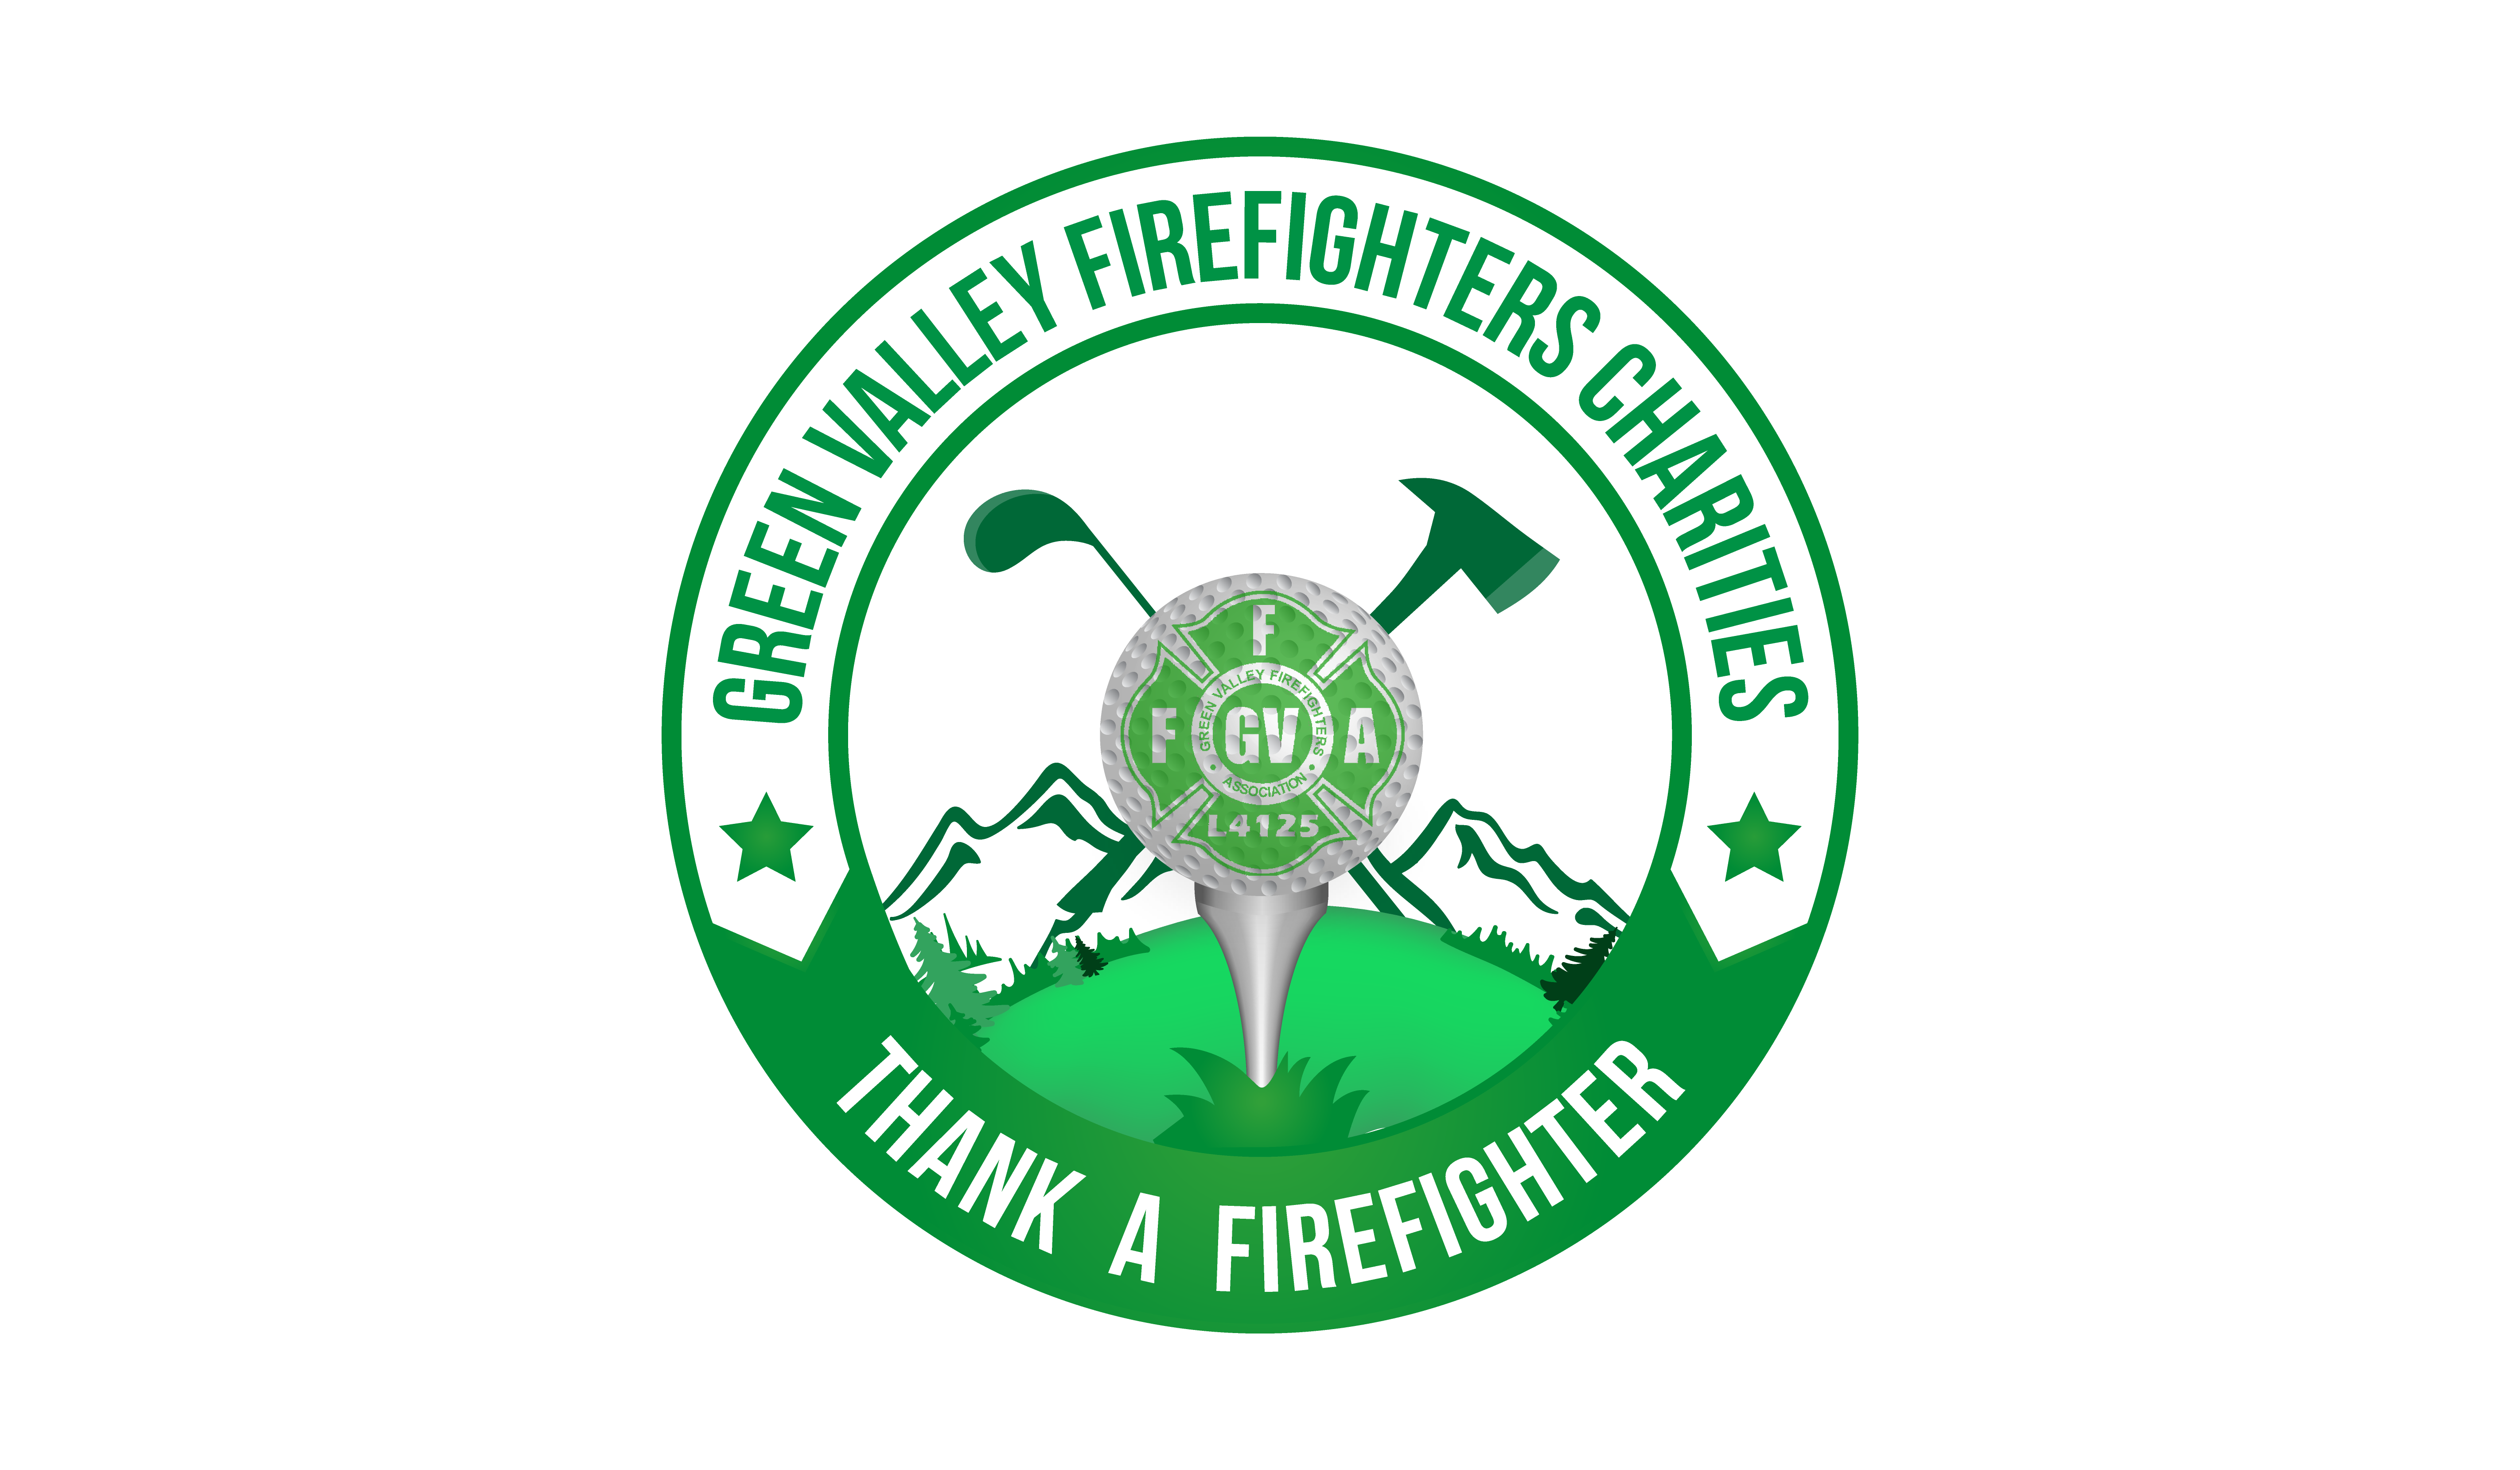 GVFFA L4215 Thank-A-Firefighter Golf Tournament